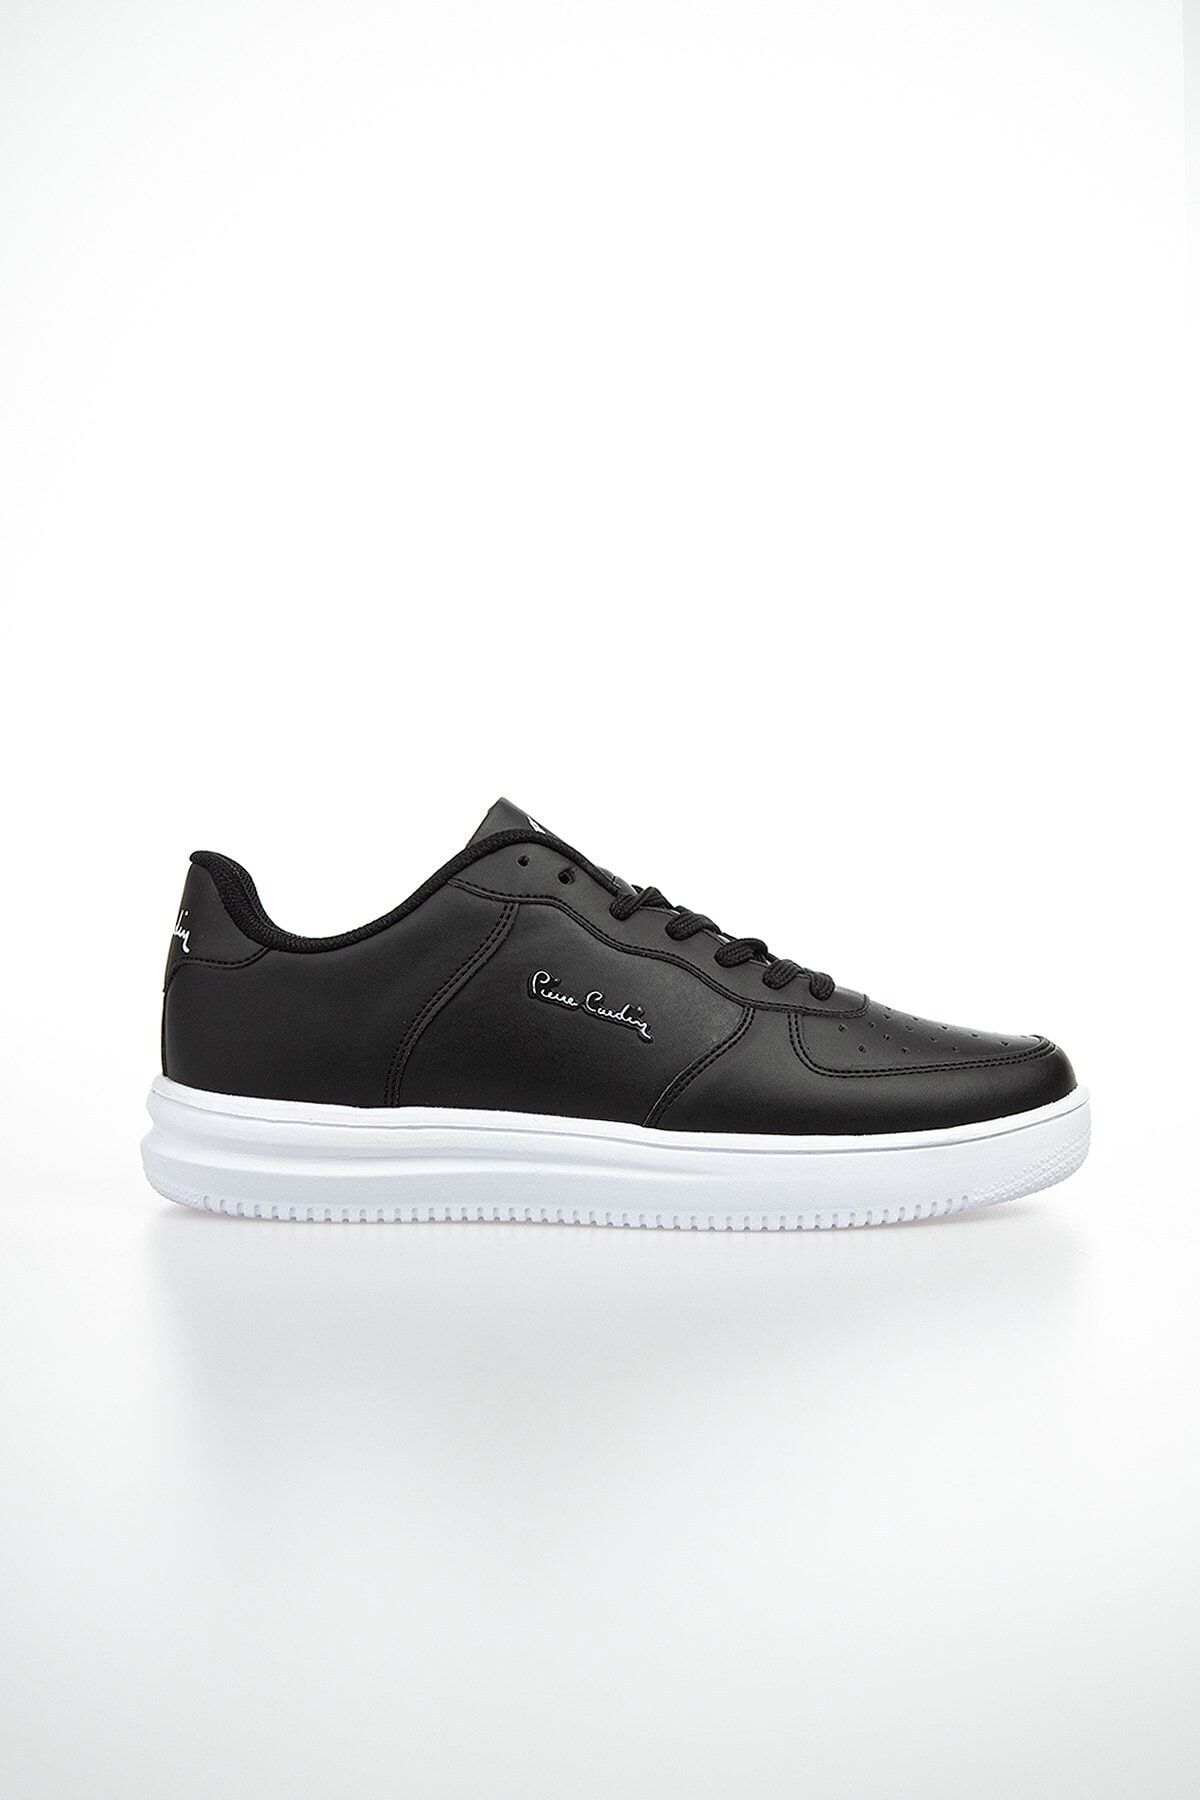 Pierre Cardin Erkek Günlük Fashion Spor Ayakkabı-siyah-beyaz Pcs-10155